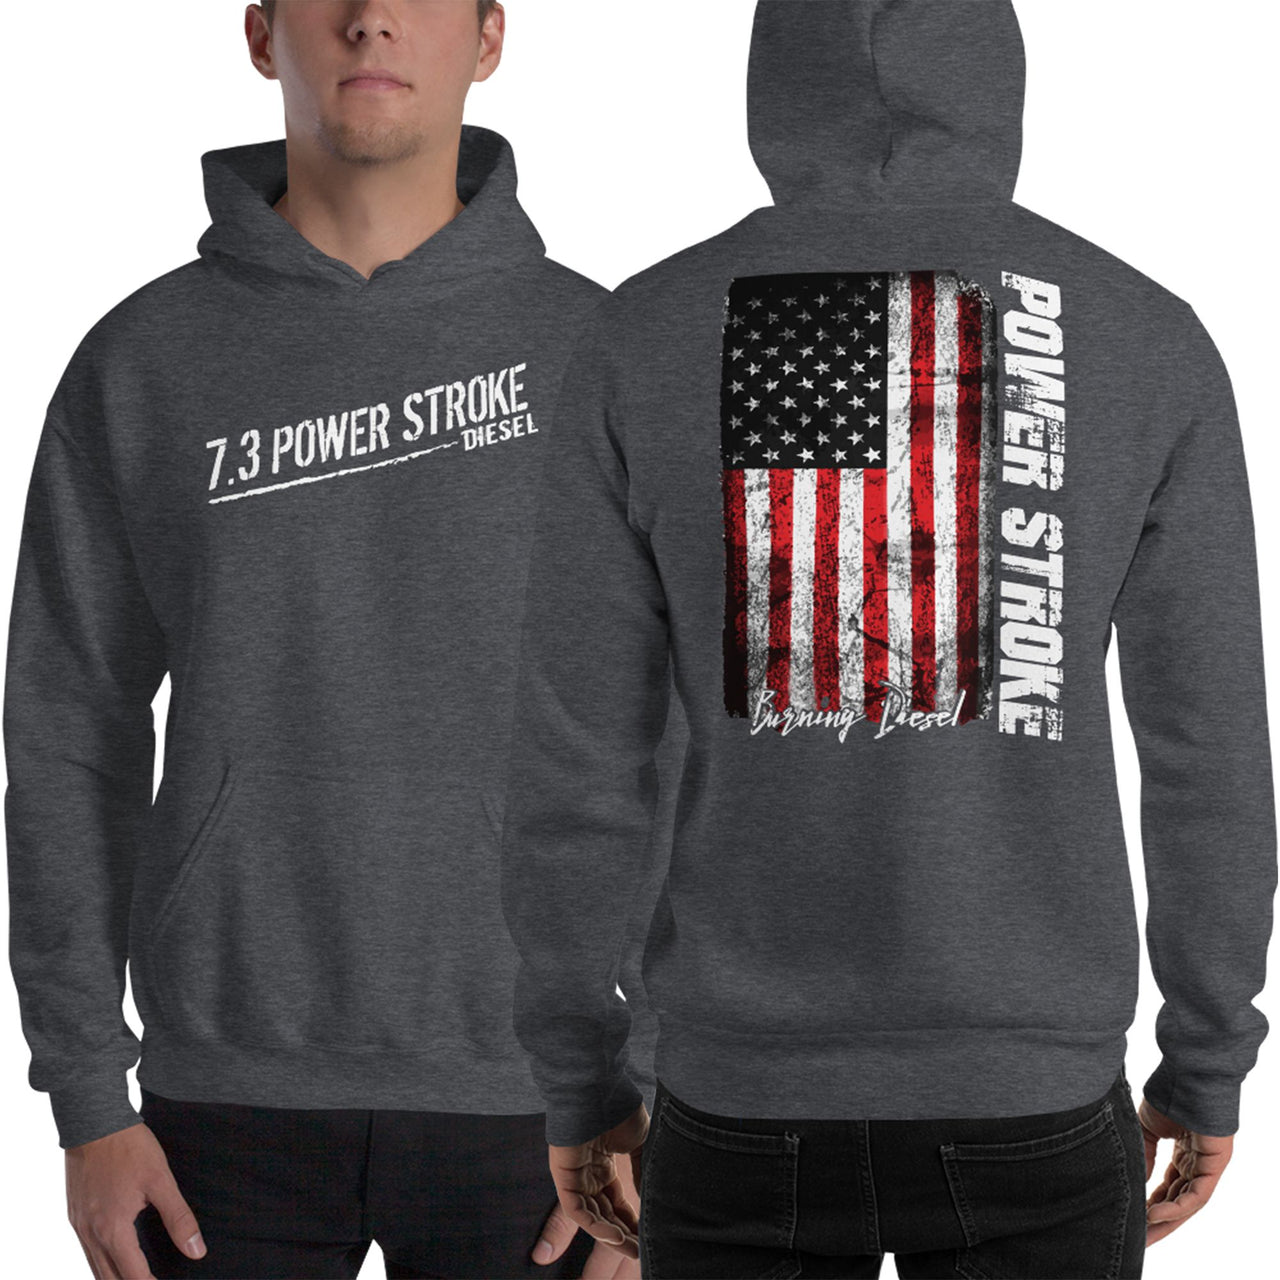 7.3 Power Stroke Diesel Hoodie, American Flag Sweatshirt modeled in grey